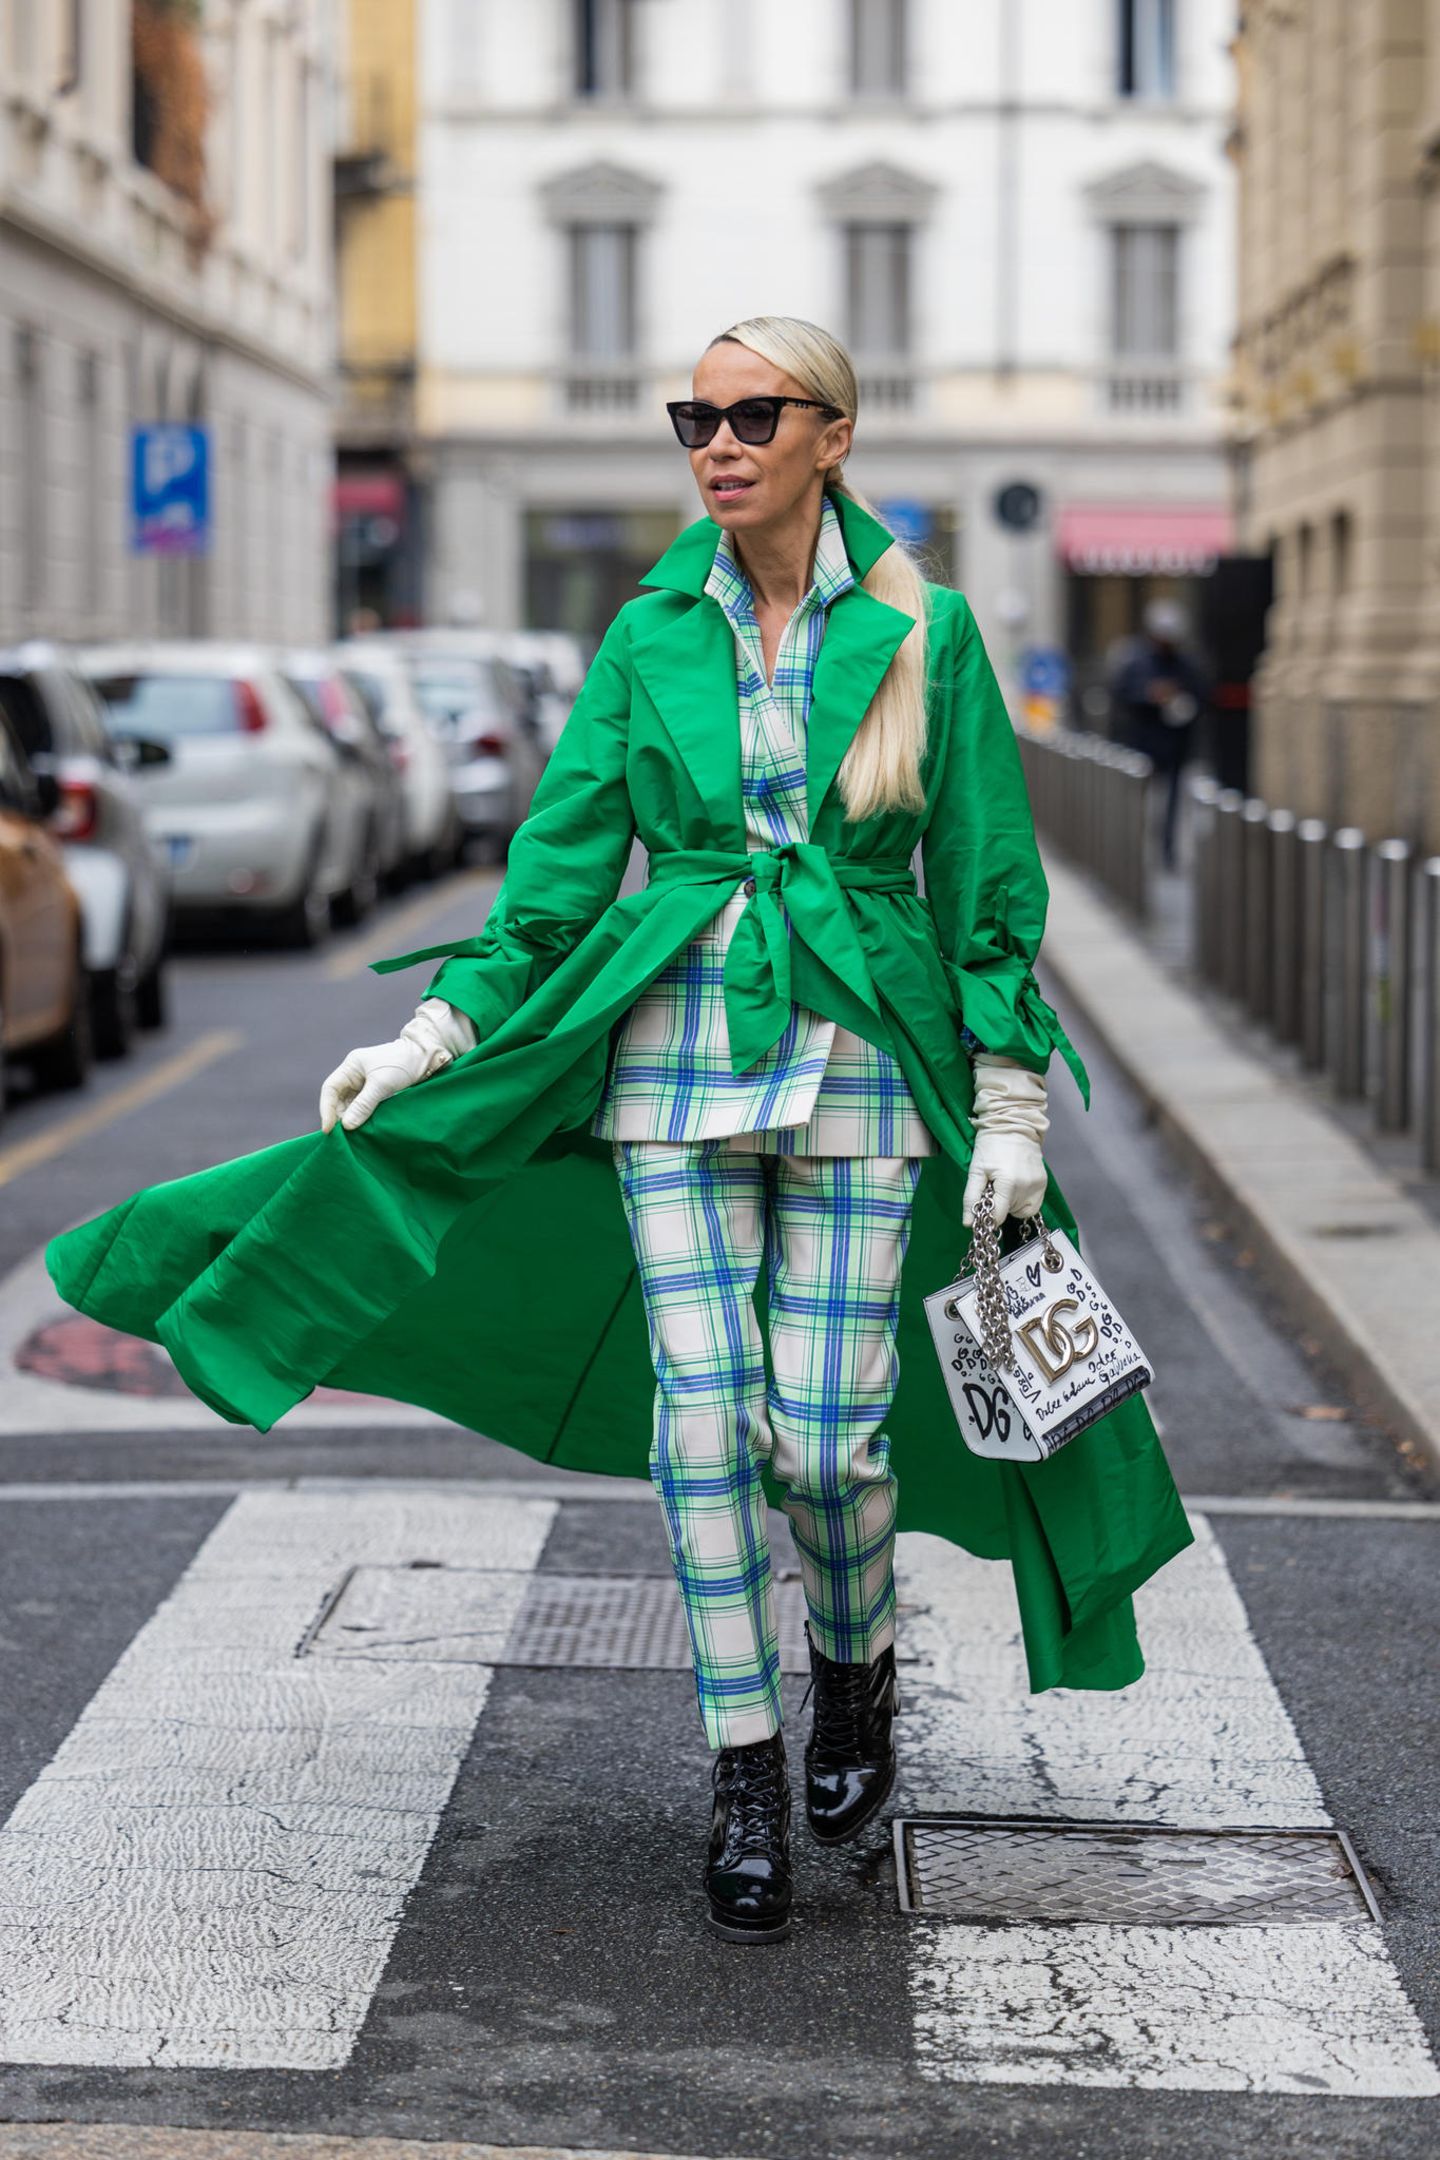 Das knallt! Auf dem Weg zur Show von Dolce & Gabbana trägt Denisa Palsha einen grünen Mantel zum karierten Anzug. Die derben Schuhe sind ein cooler Stilbruch.